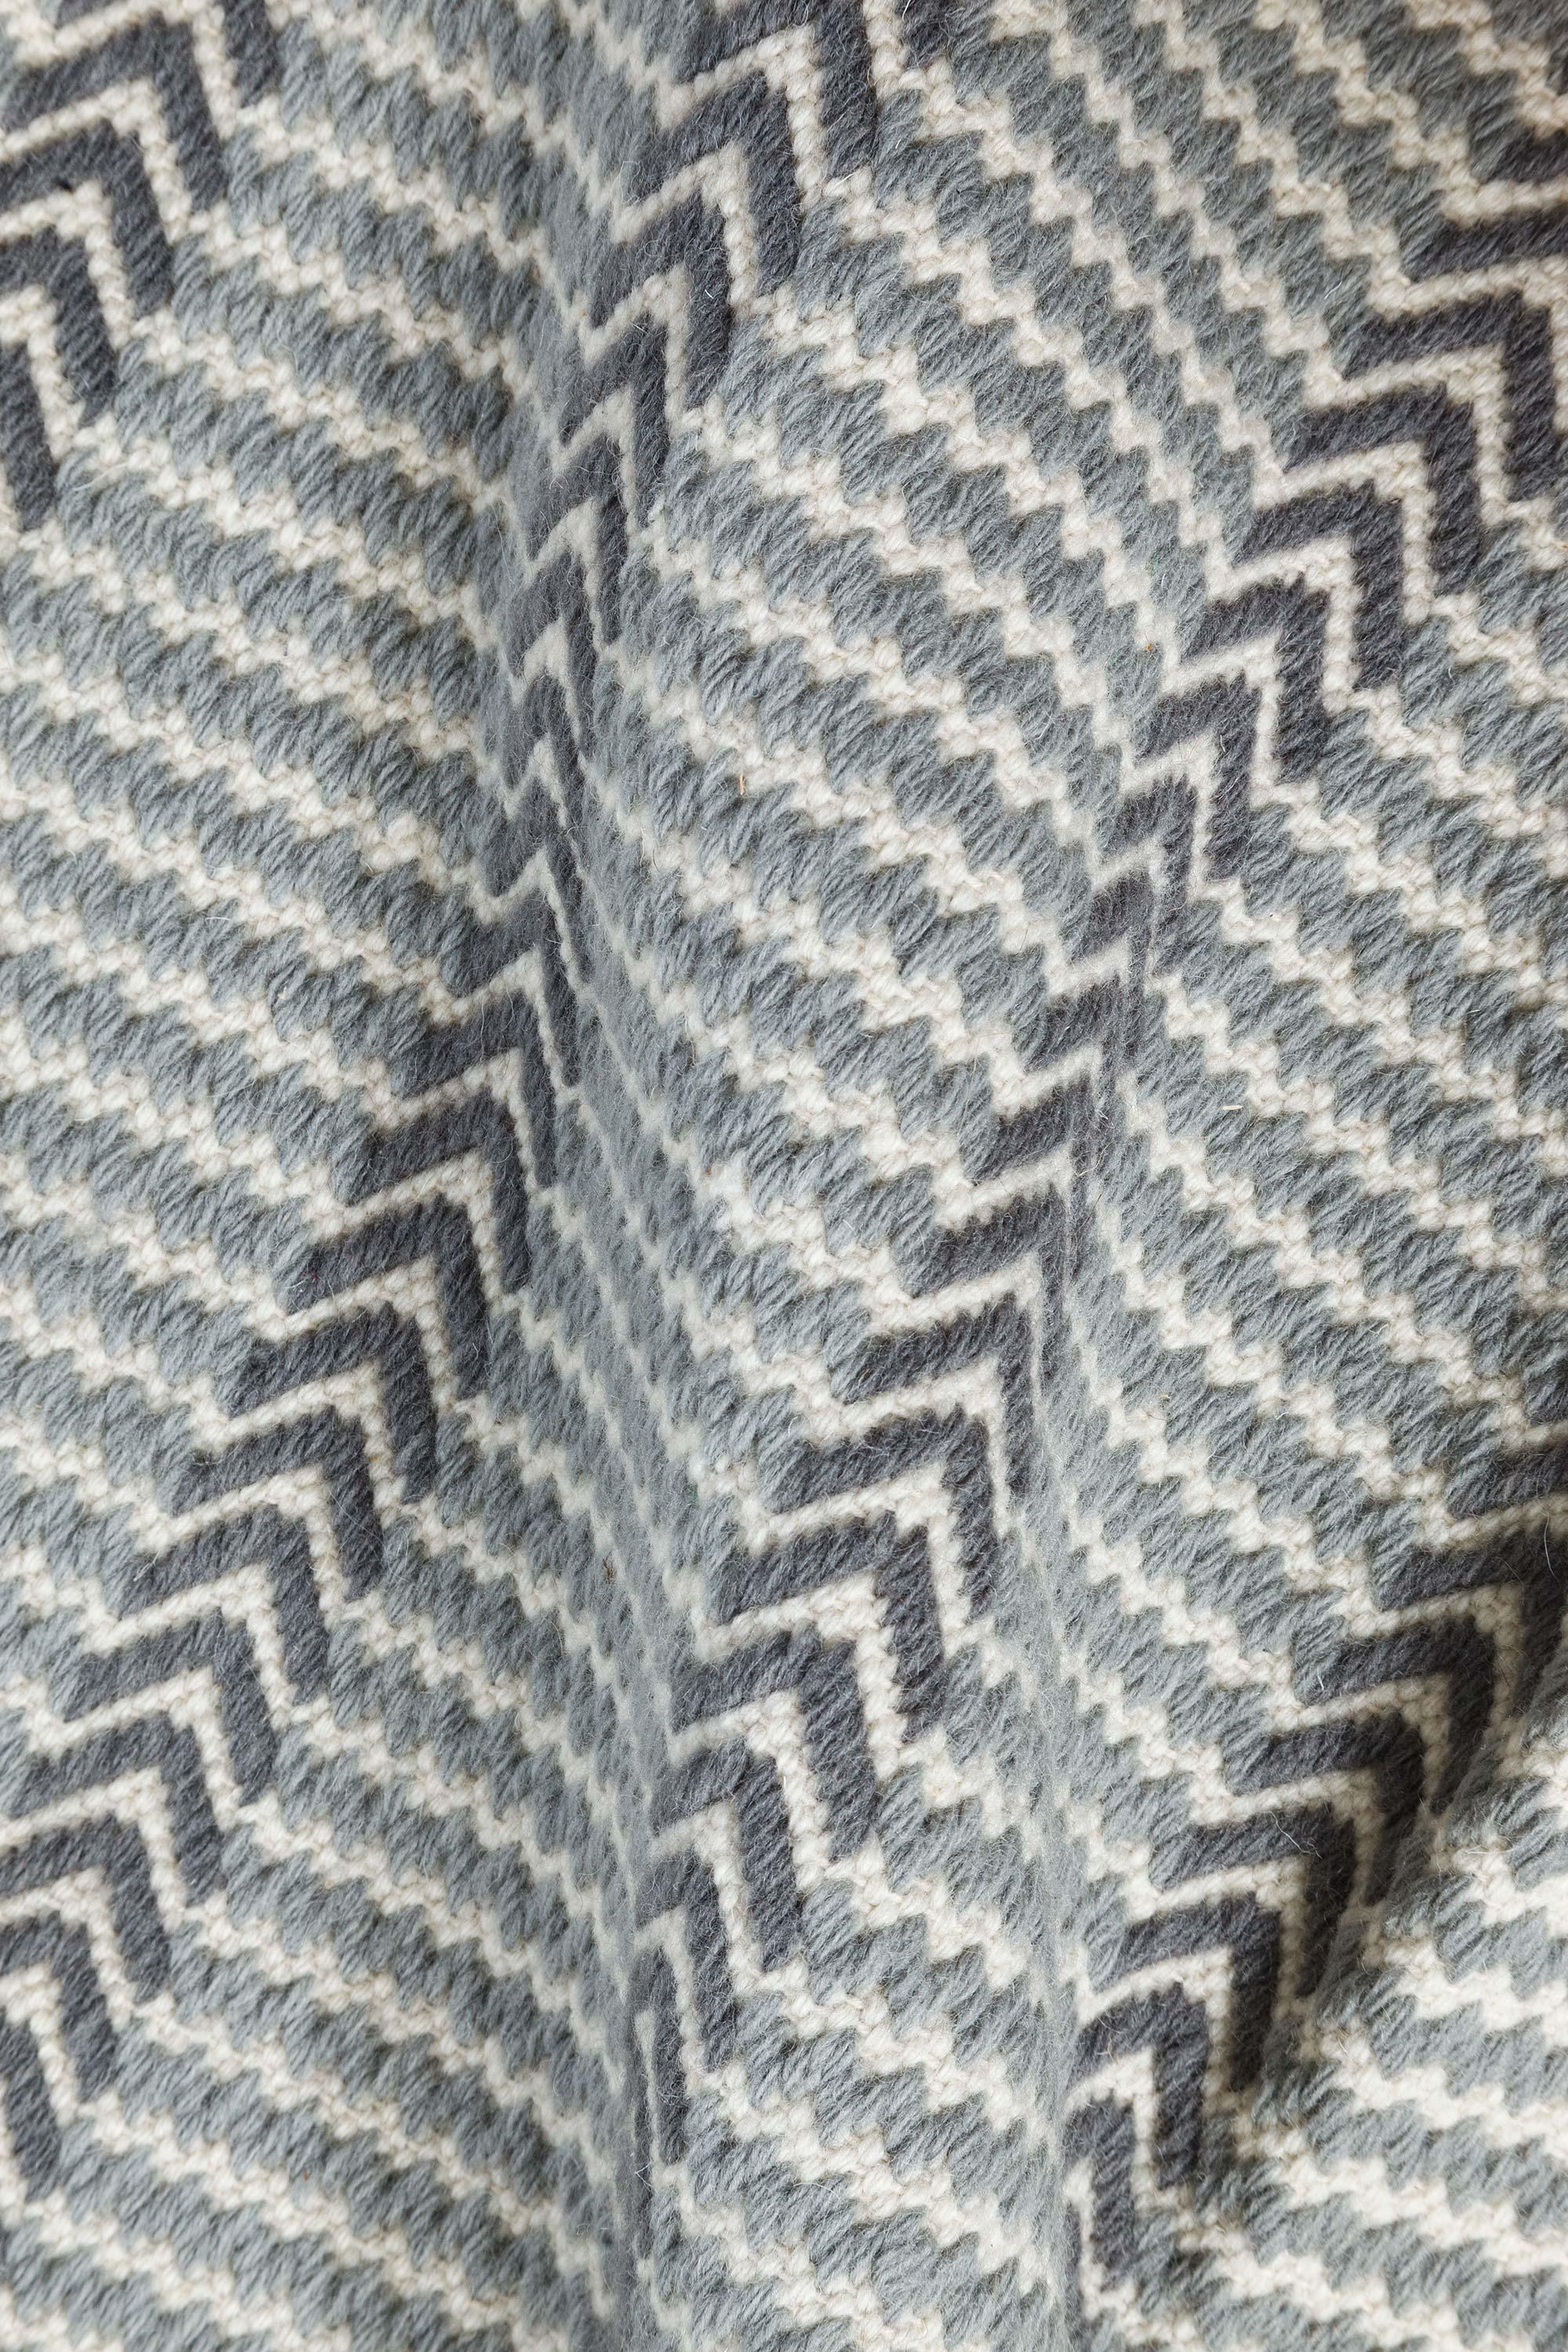 Zeitgenössischer Buxus-Teppich aus handgefertigter Wolle von Doris Leslie Blau.
Größe: 14'2'' × 11'8''
Handgewebter, flachgewebter Wollteppich mit geometrischem Muster in Stahlblau, Grau und Elfenbein. Aus den hochwertigsten MATERIALEN hergestellt,